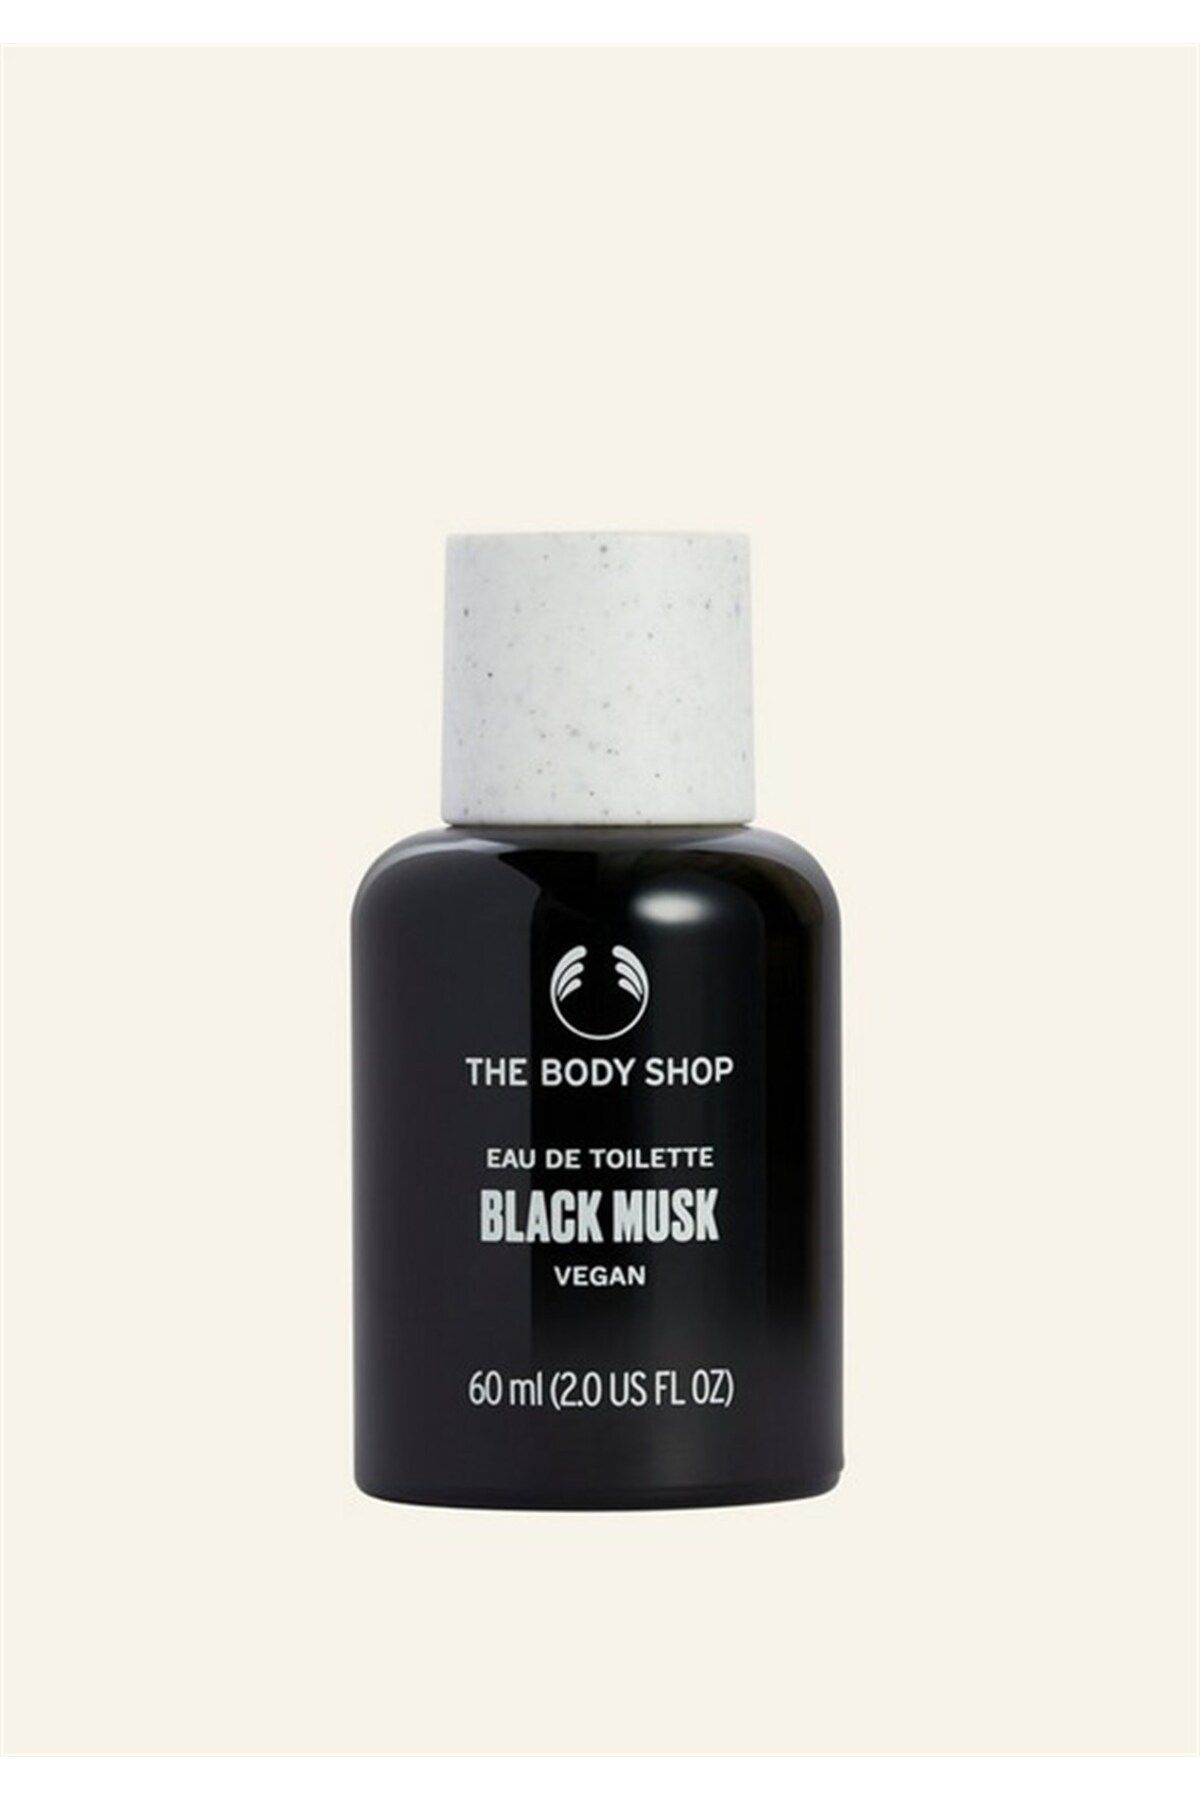 THE BODY SHOP Black Musk Eau De Toilette 60 ml